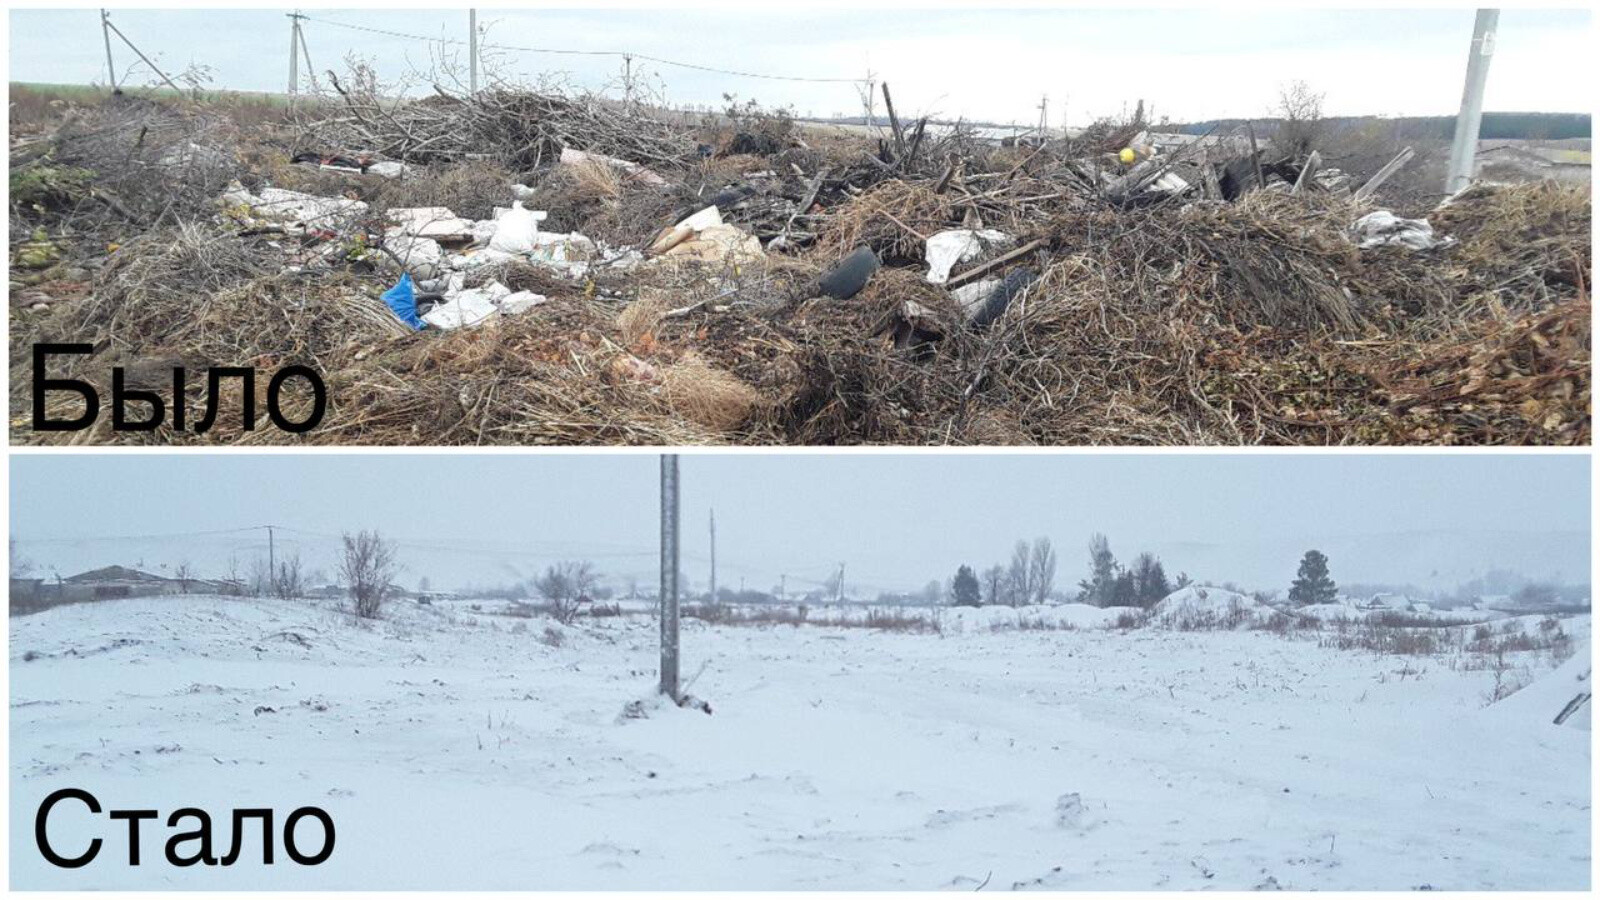 В Ютазинском районе РТ благодаря экологам ликвидировали незаконную свалку